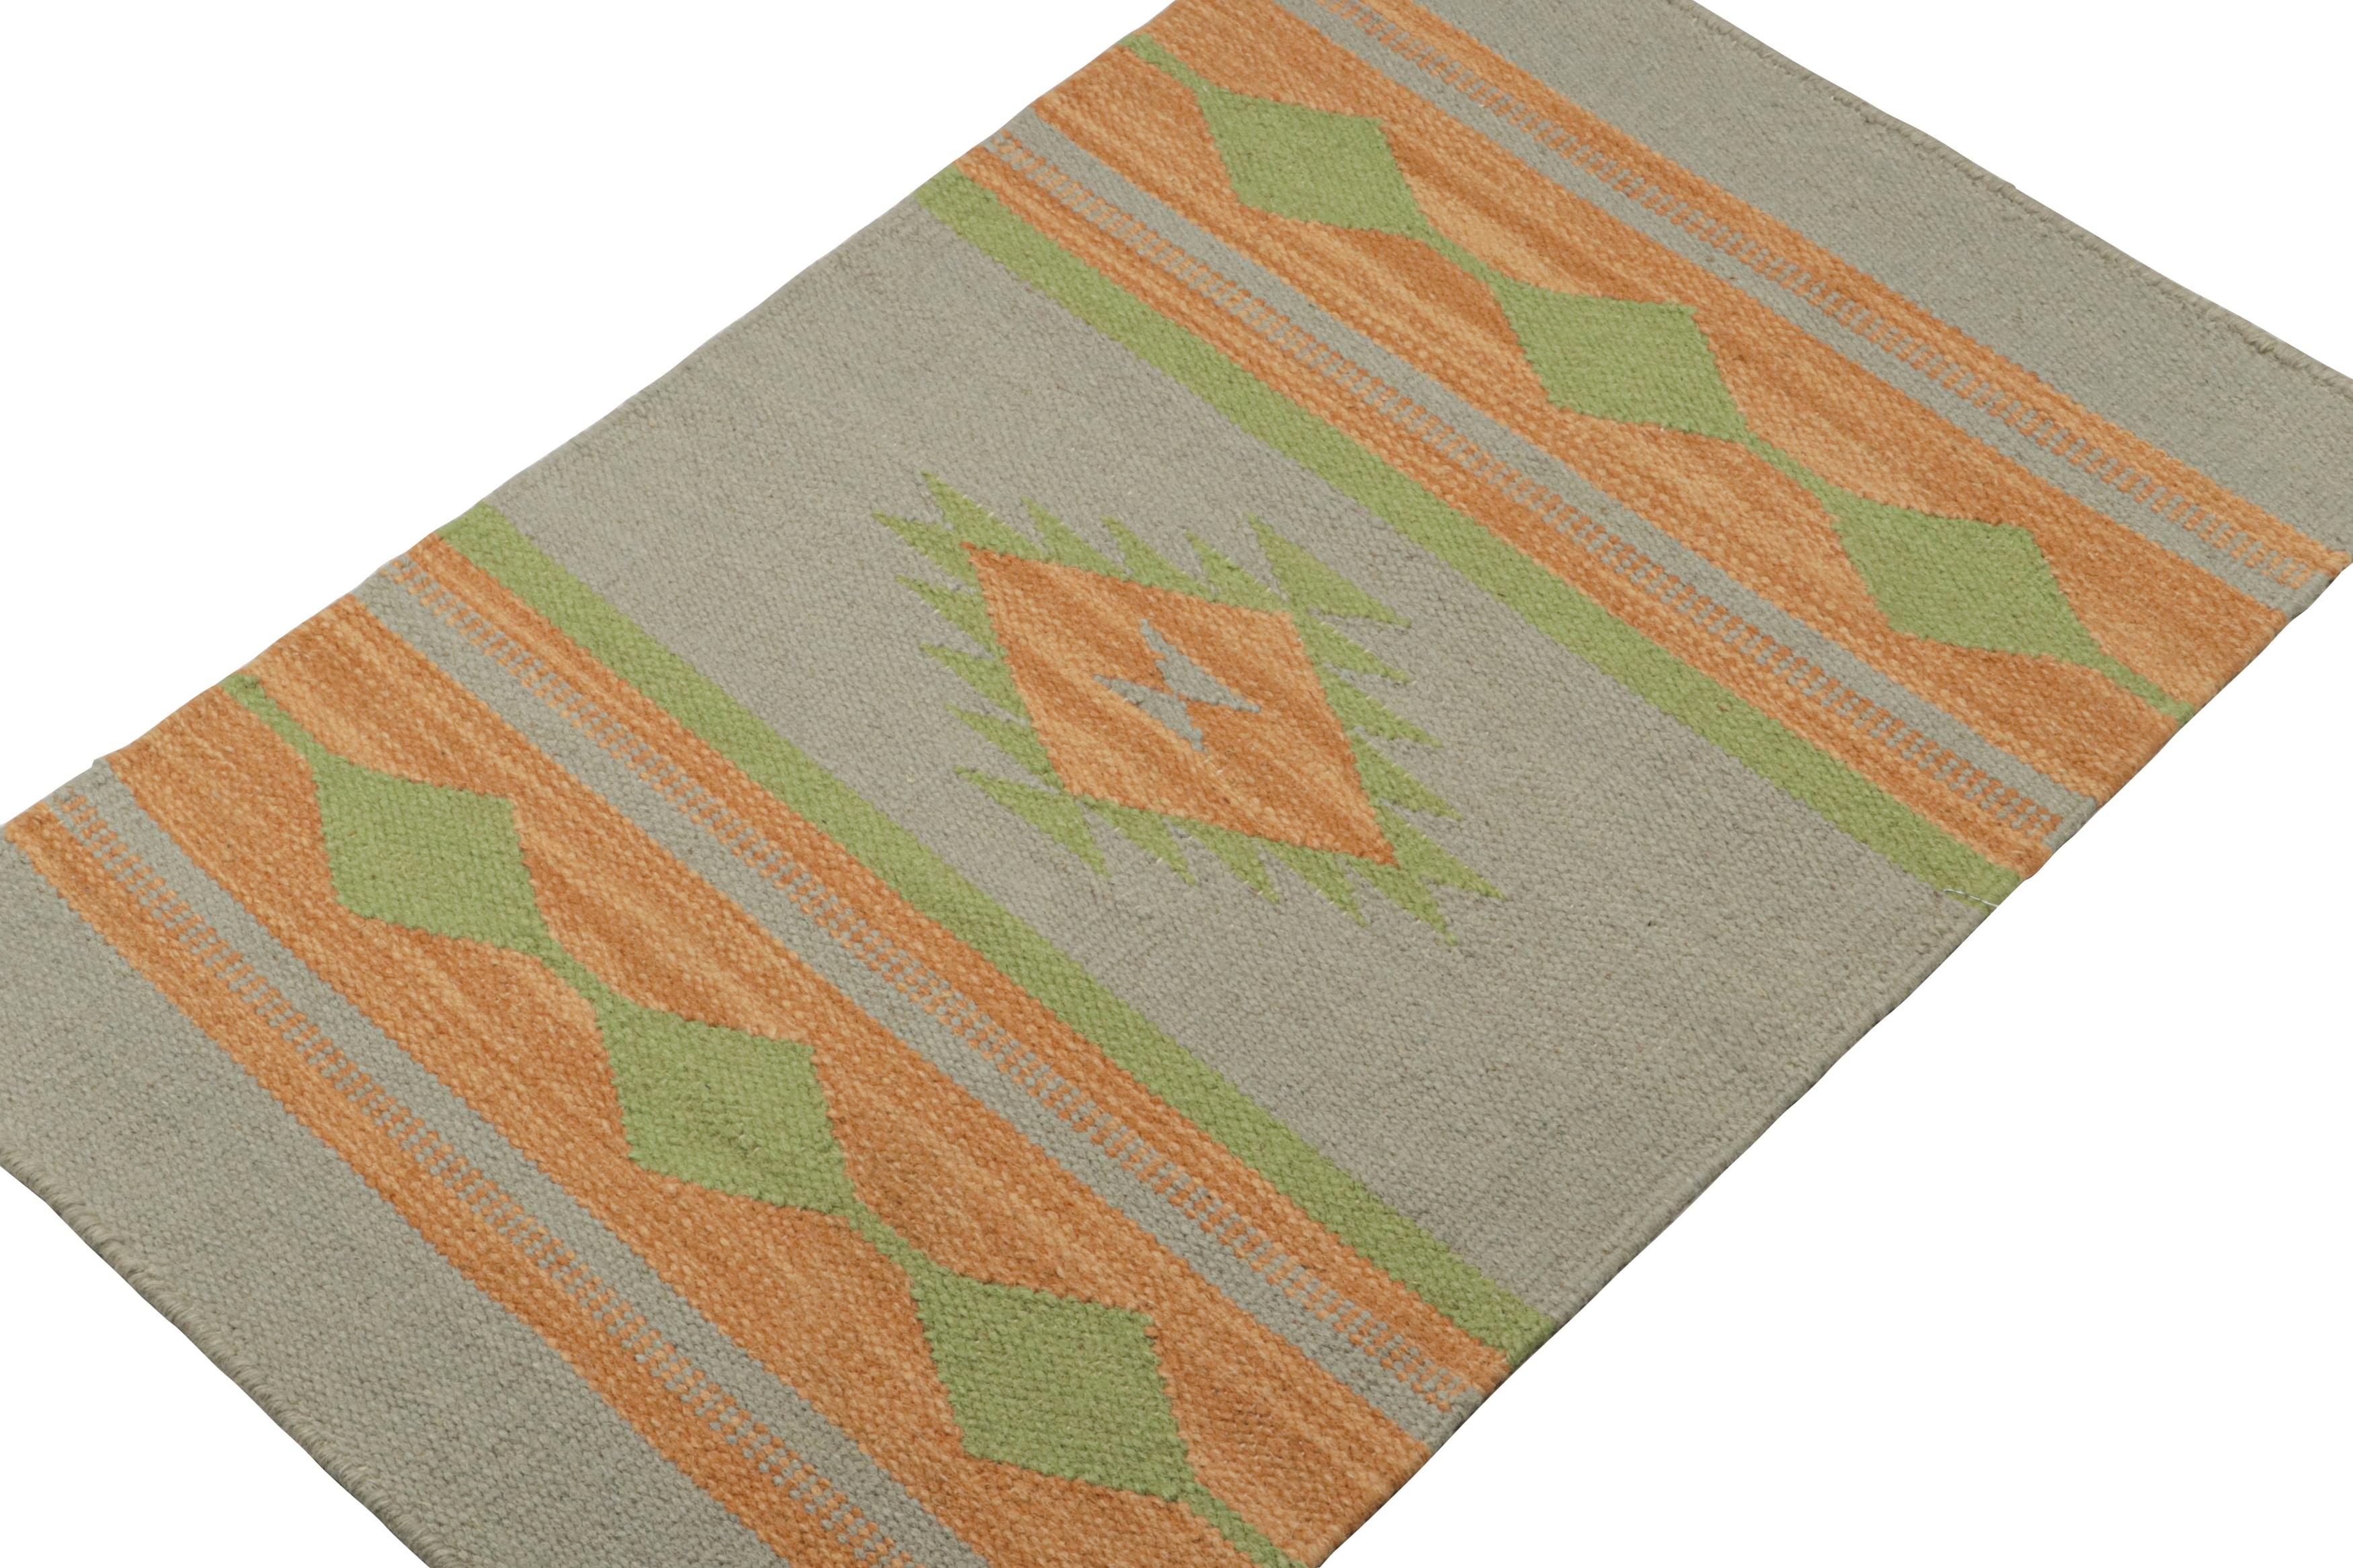 Inspirée des kilims tribaux, cette pièce de 2x3 est une nouvelle addition élégante à la collection flatweave de Rug & Kilim.  

Sur le Design : 

Tissé à la main en laine, ce kilim contemporain porte des motifs géométriques or et vert sur fond gris.